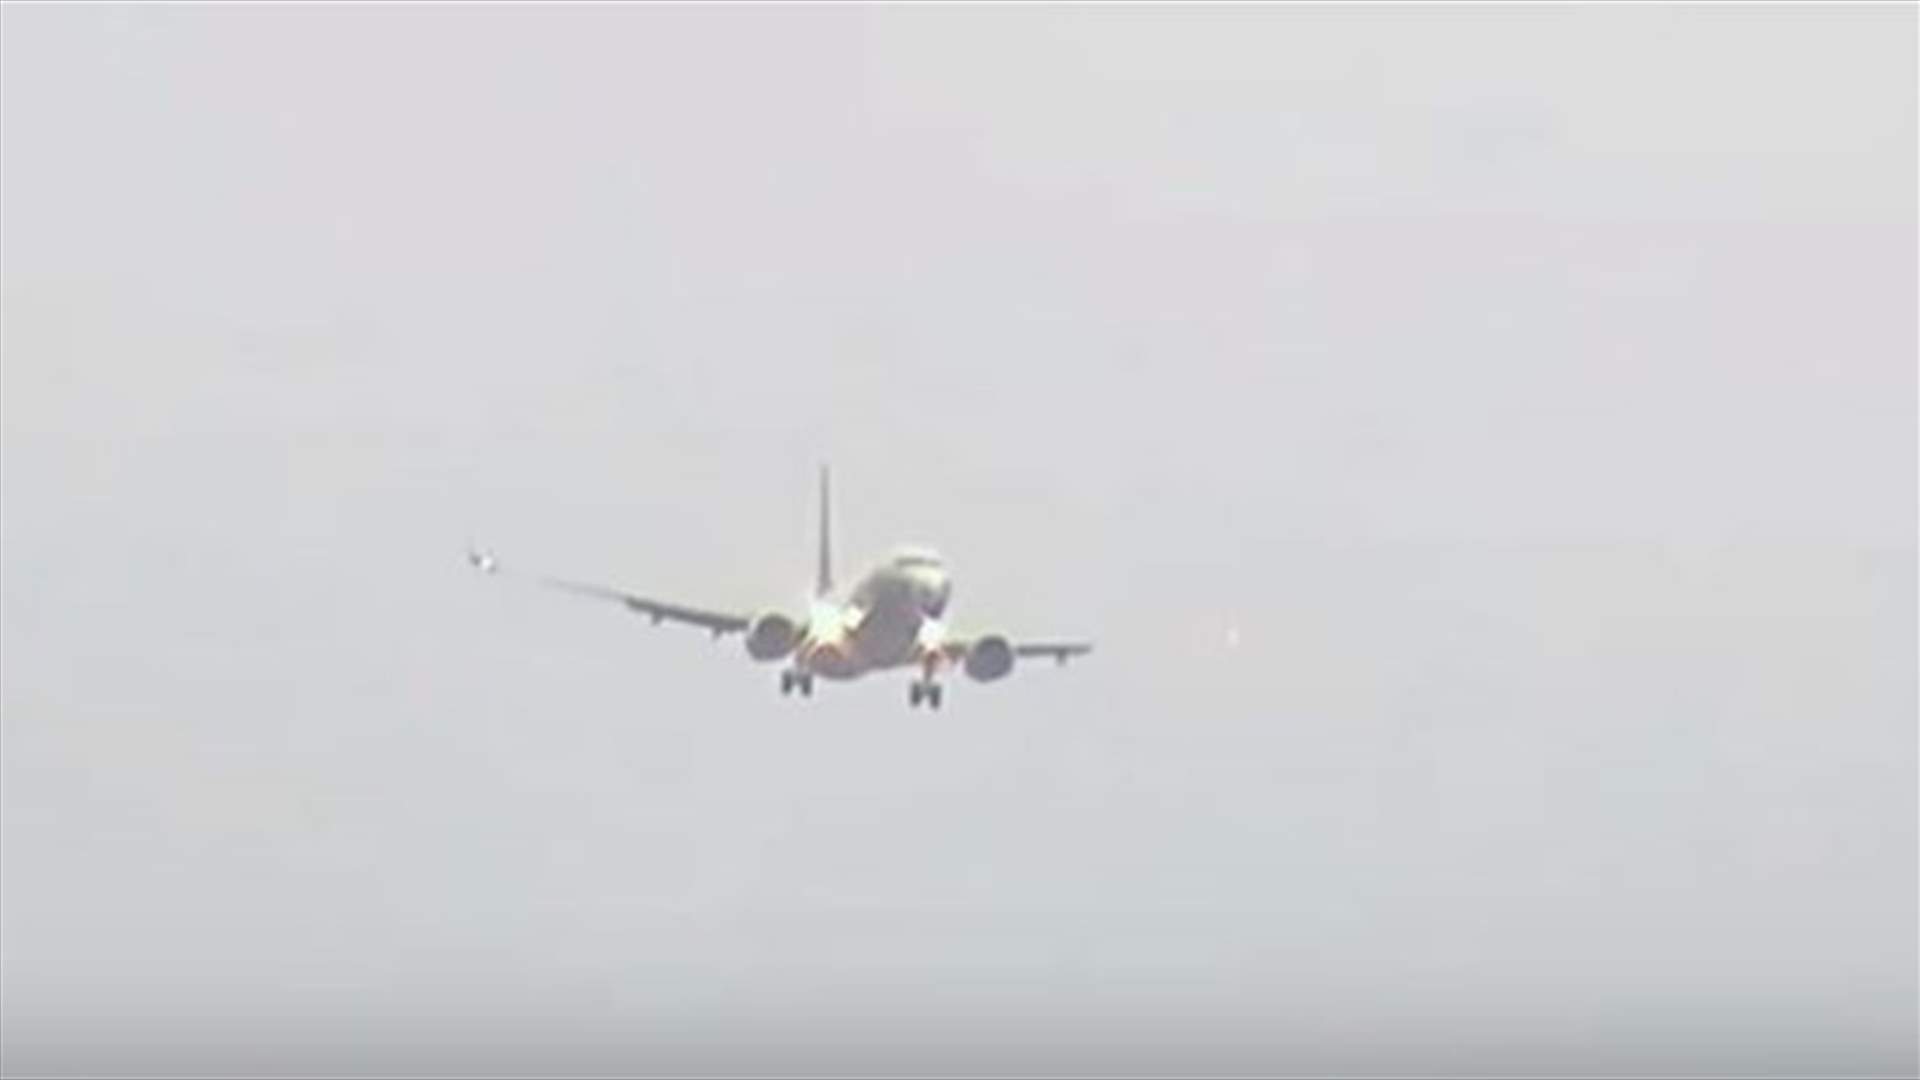 بالفيديو- لحظات مرعبة للركاب...طائرة تحاول الهبوط أثناء العاصفة